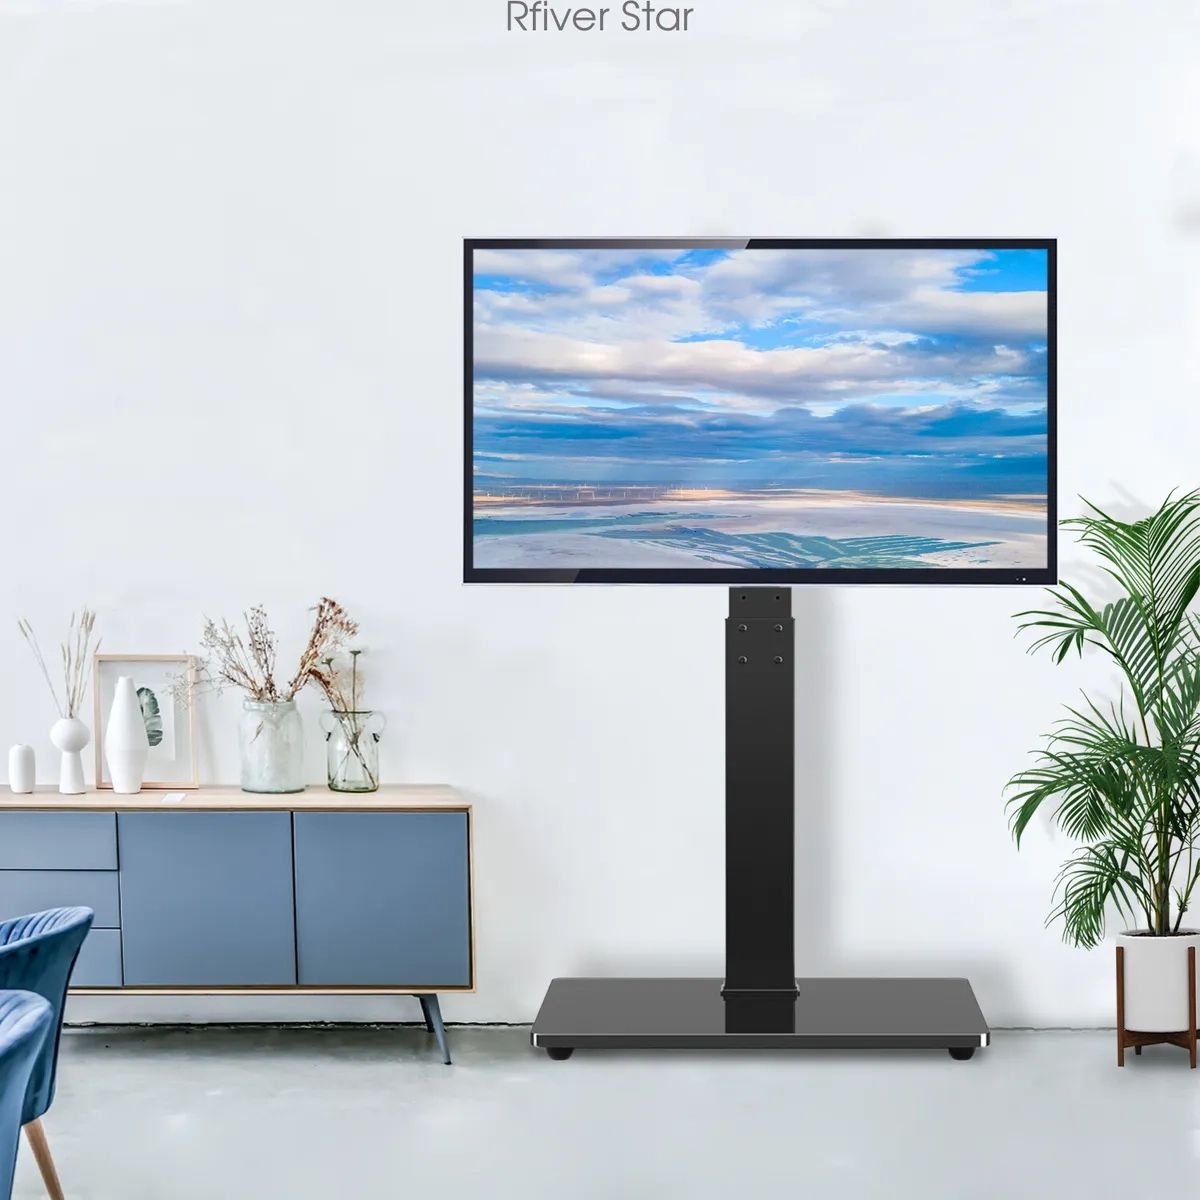 Universal Floor Tv Stand With Swivel Mount&shelves For 32 65 Inch Tvs | Ebay Regarding Universal Floor Tv Stands (View 6 of 15)